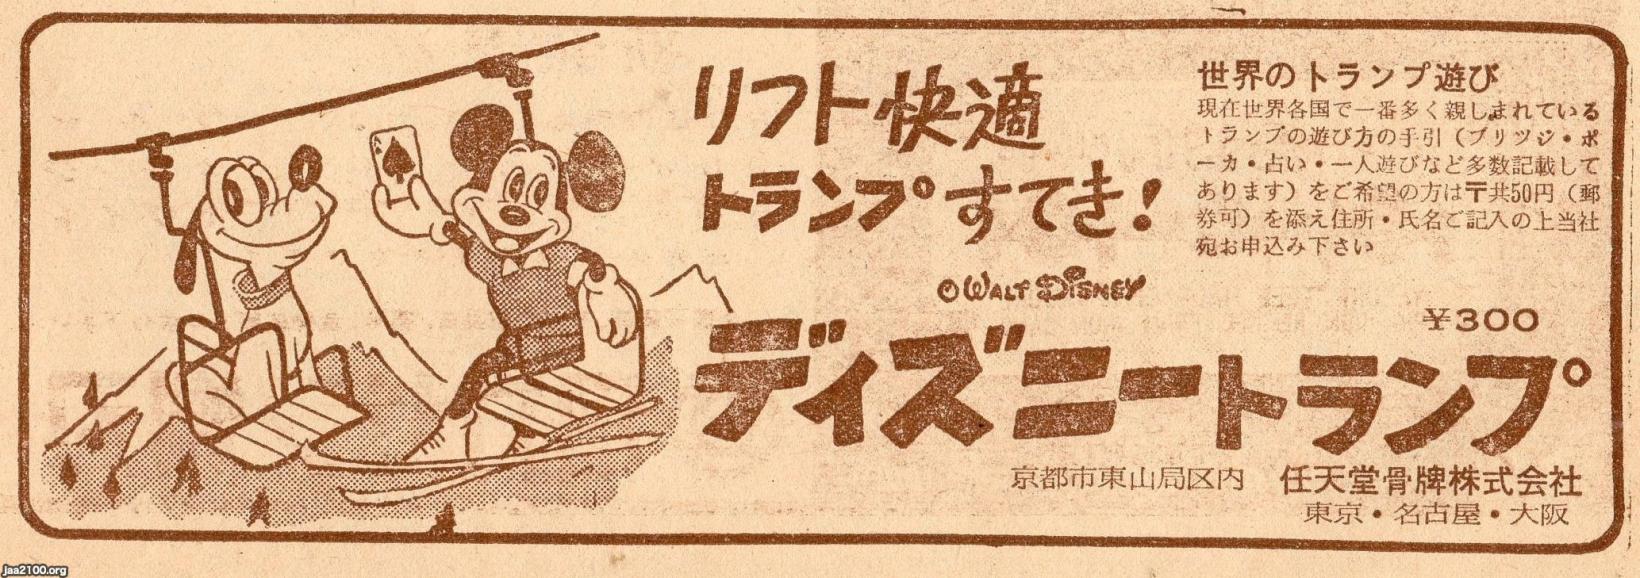 子供の生活 昭和36年 ディズニートランプ 任天堂骨牌 現 任天堂 ジャパンアーカイブズ Japan Archives